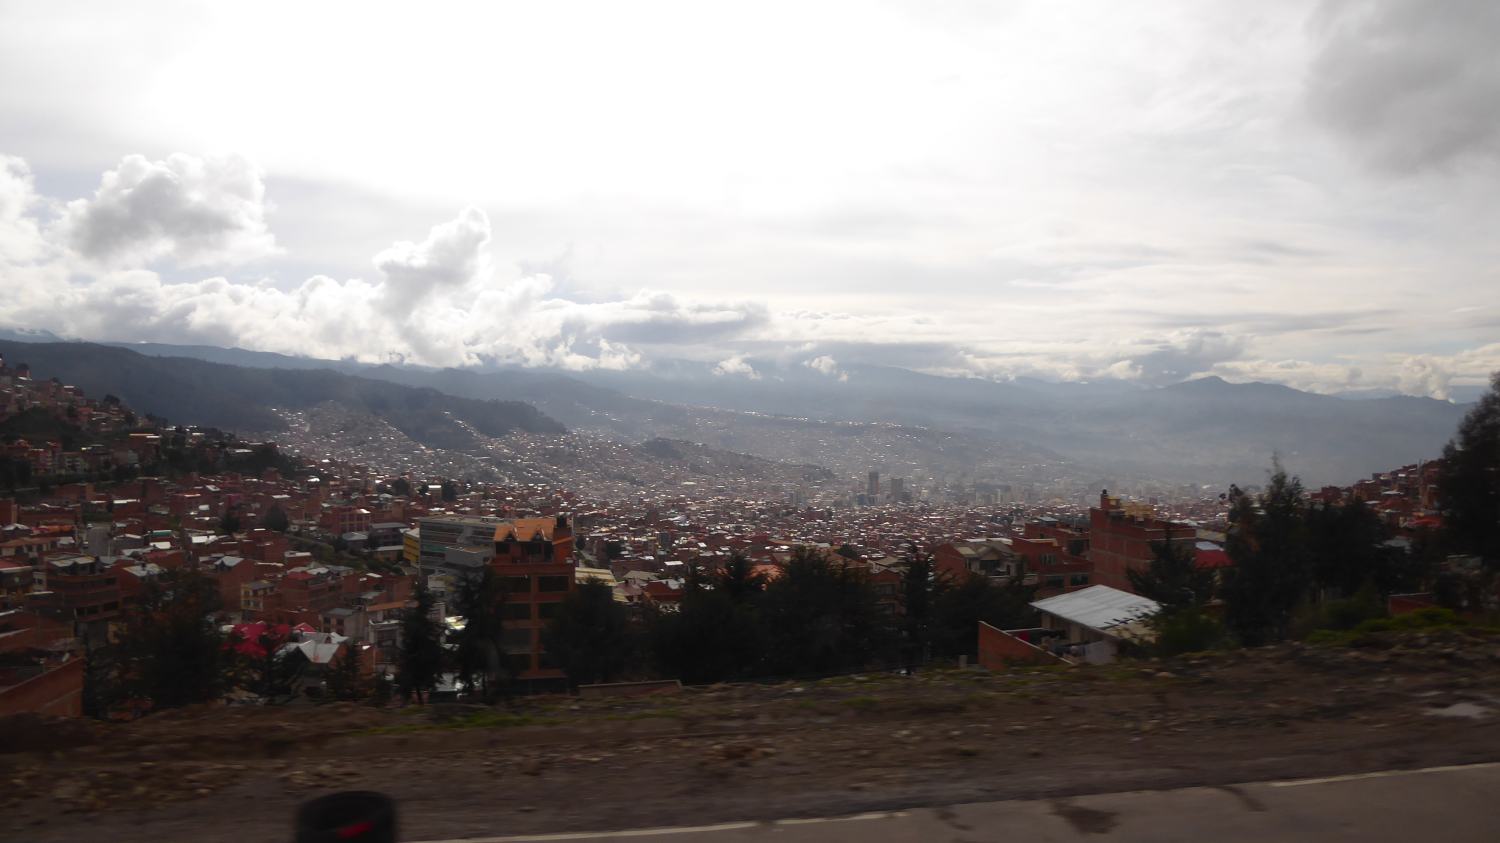 La Paz in the rain